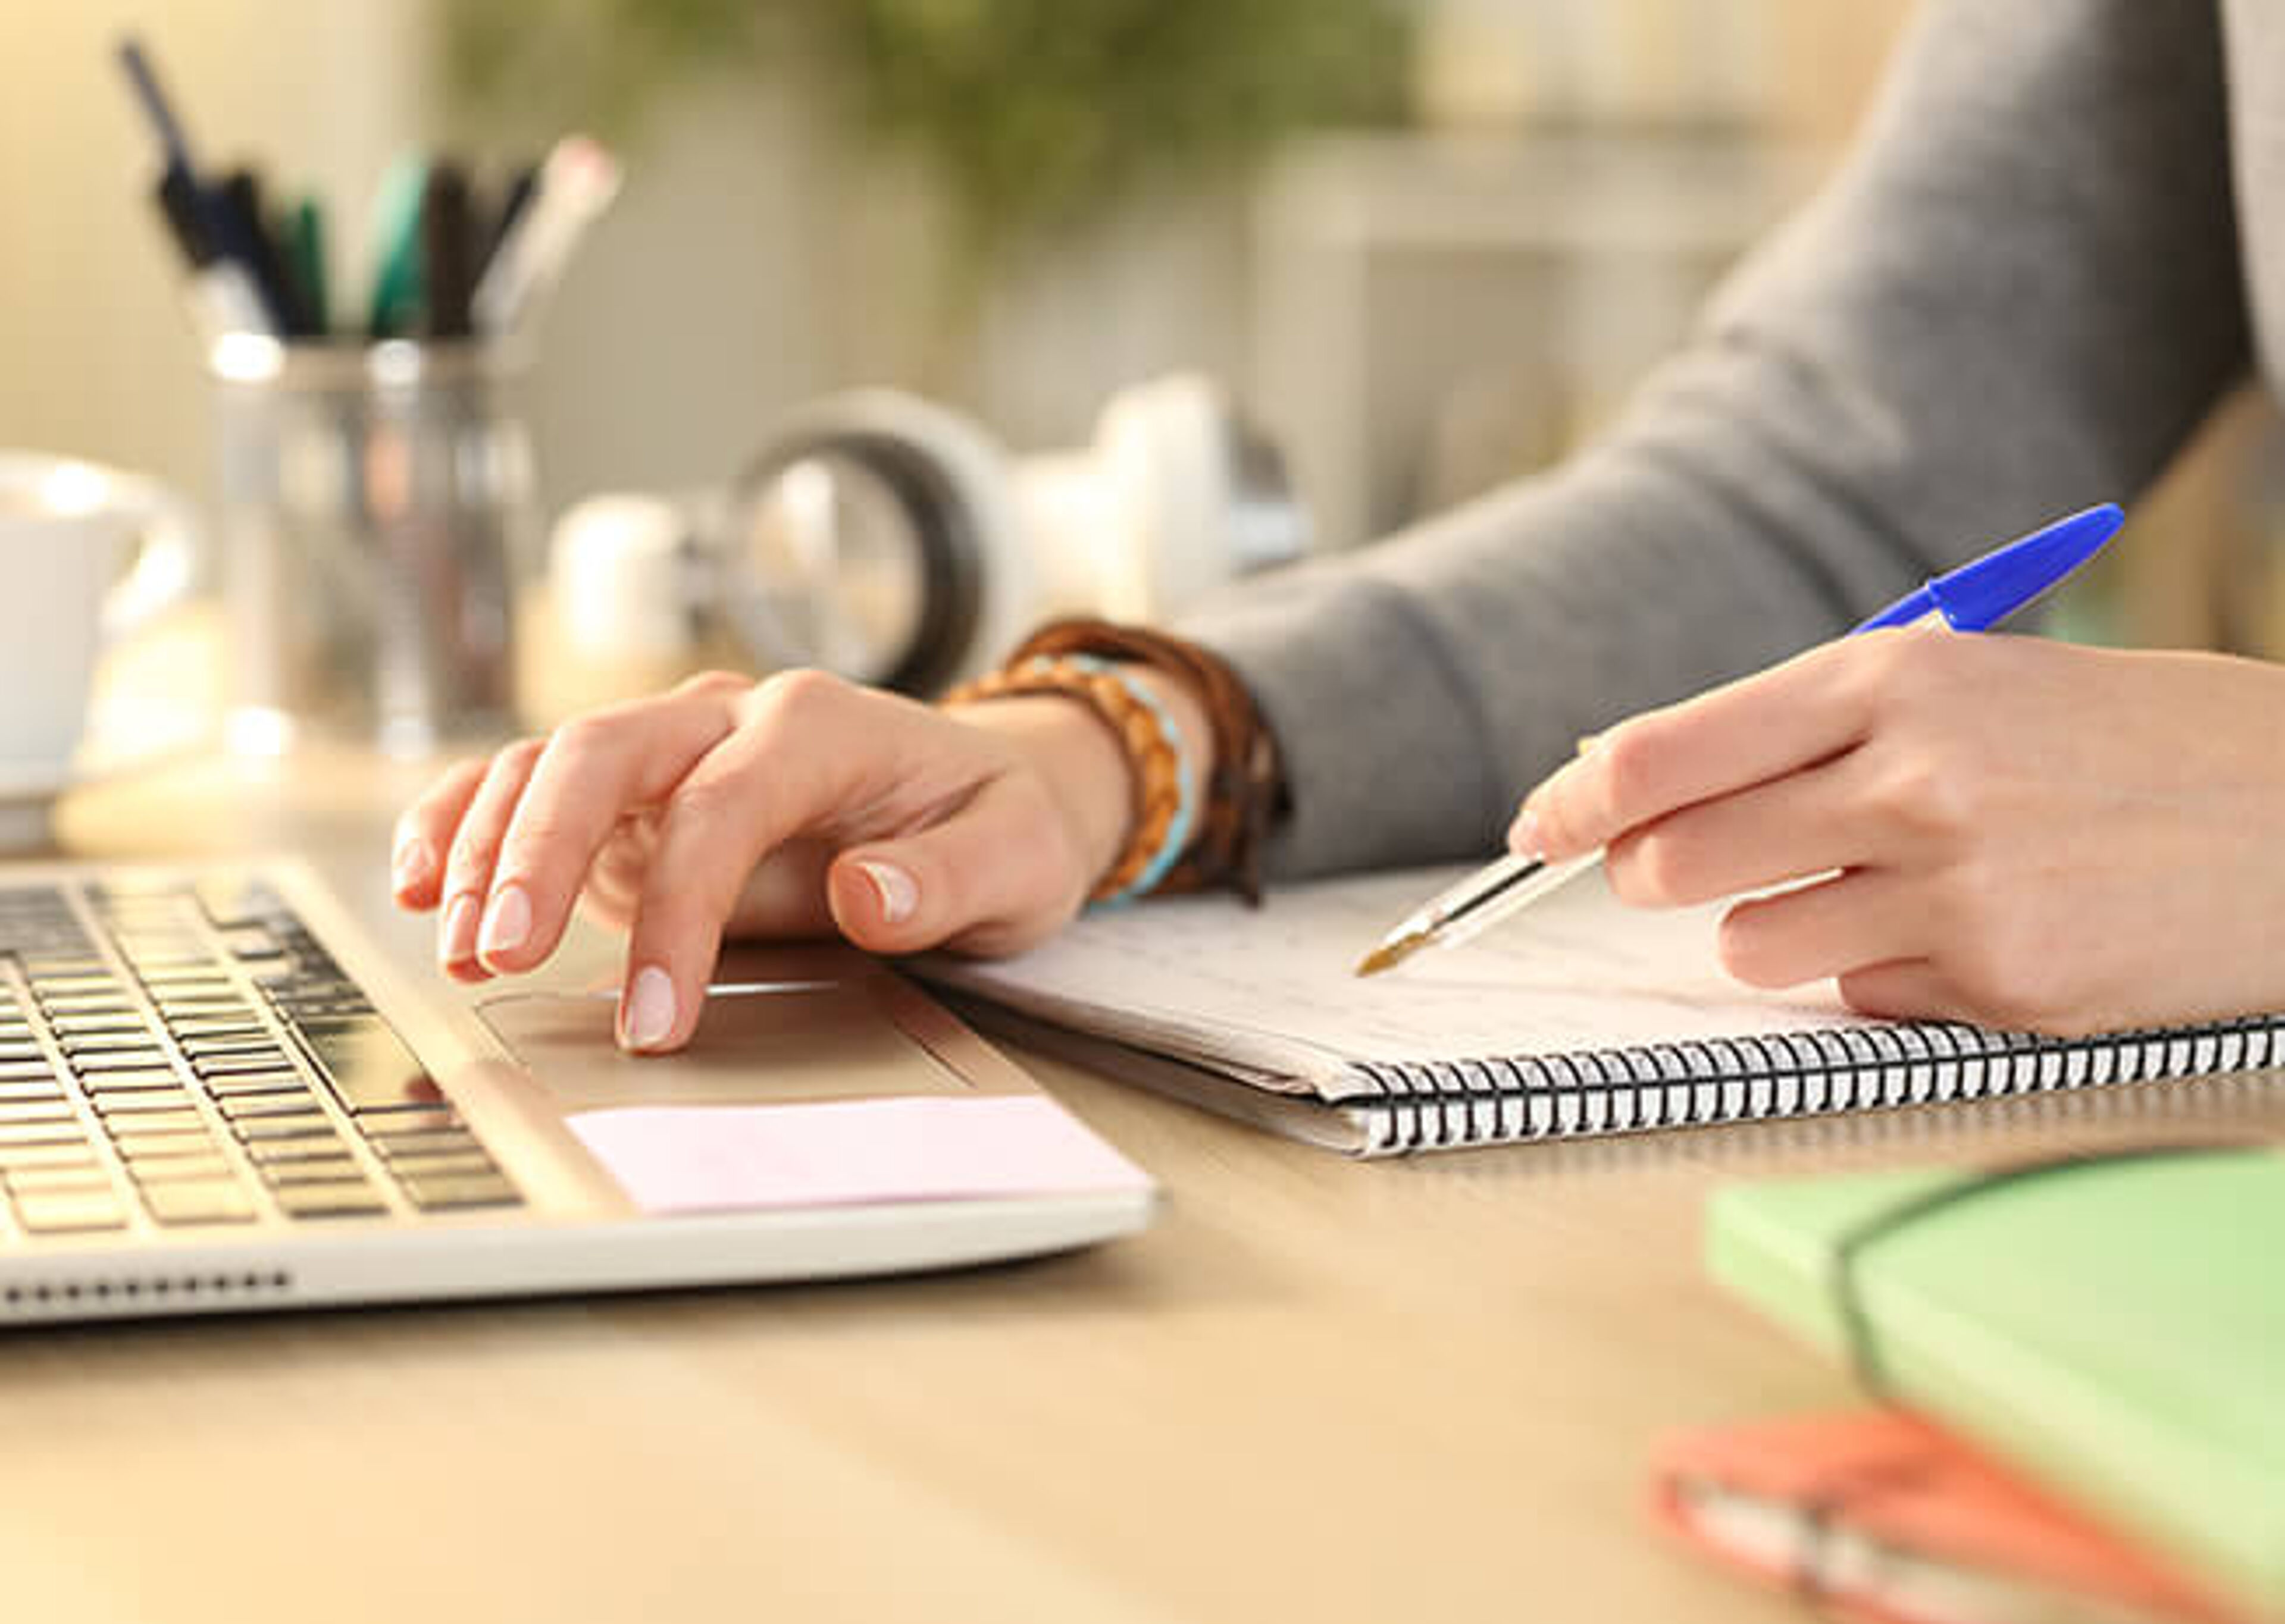 Primer plano de las manos de una persona trabajando, escribiendo en una libreta junto a un portátil en un escritorio bien organizado.